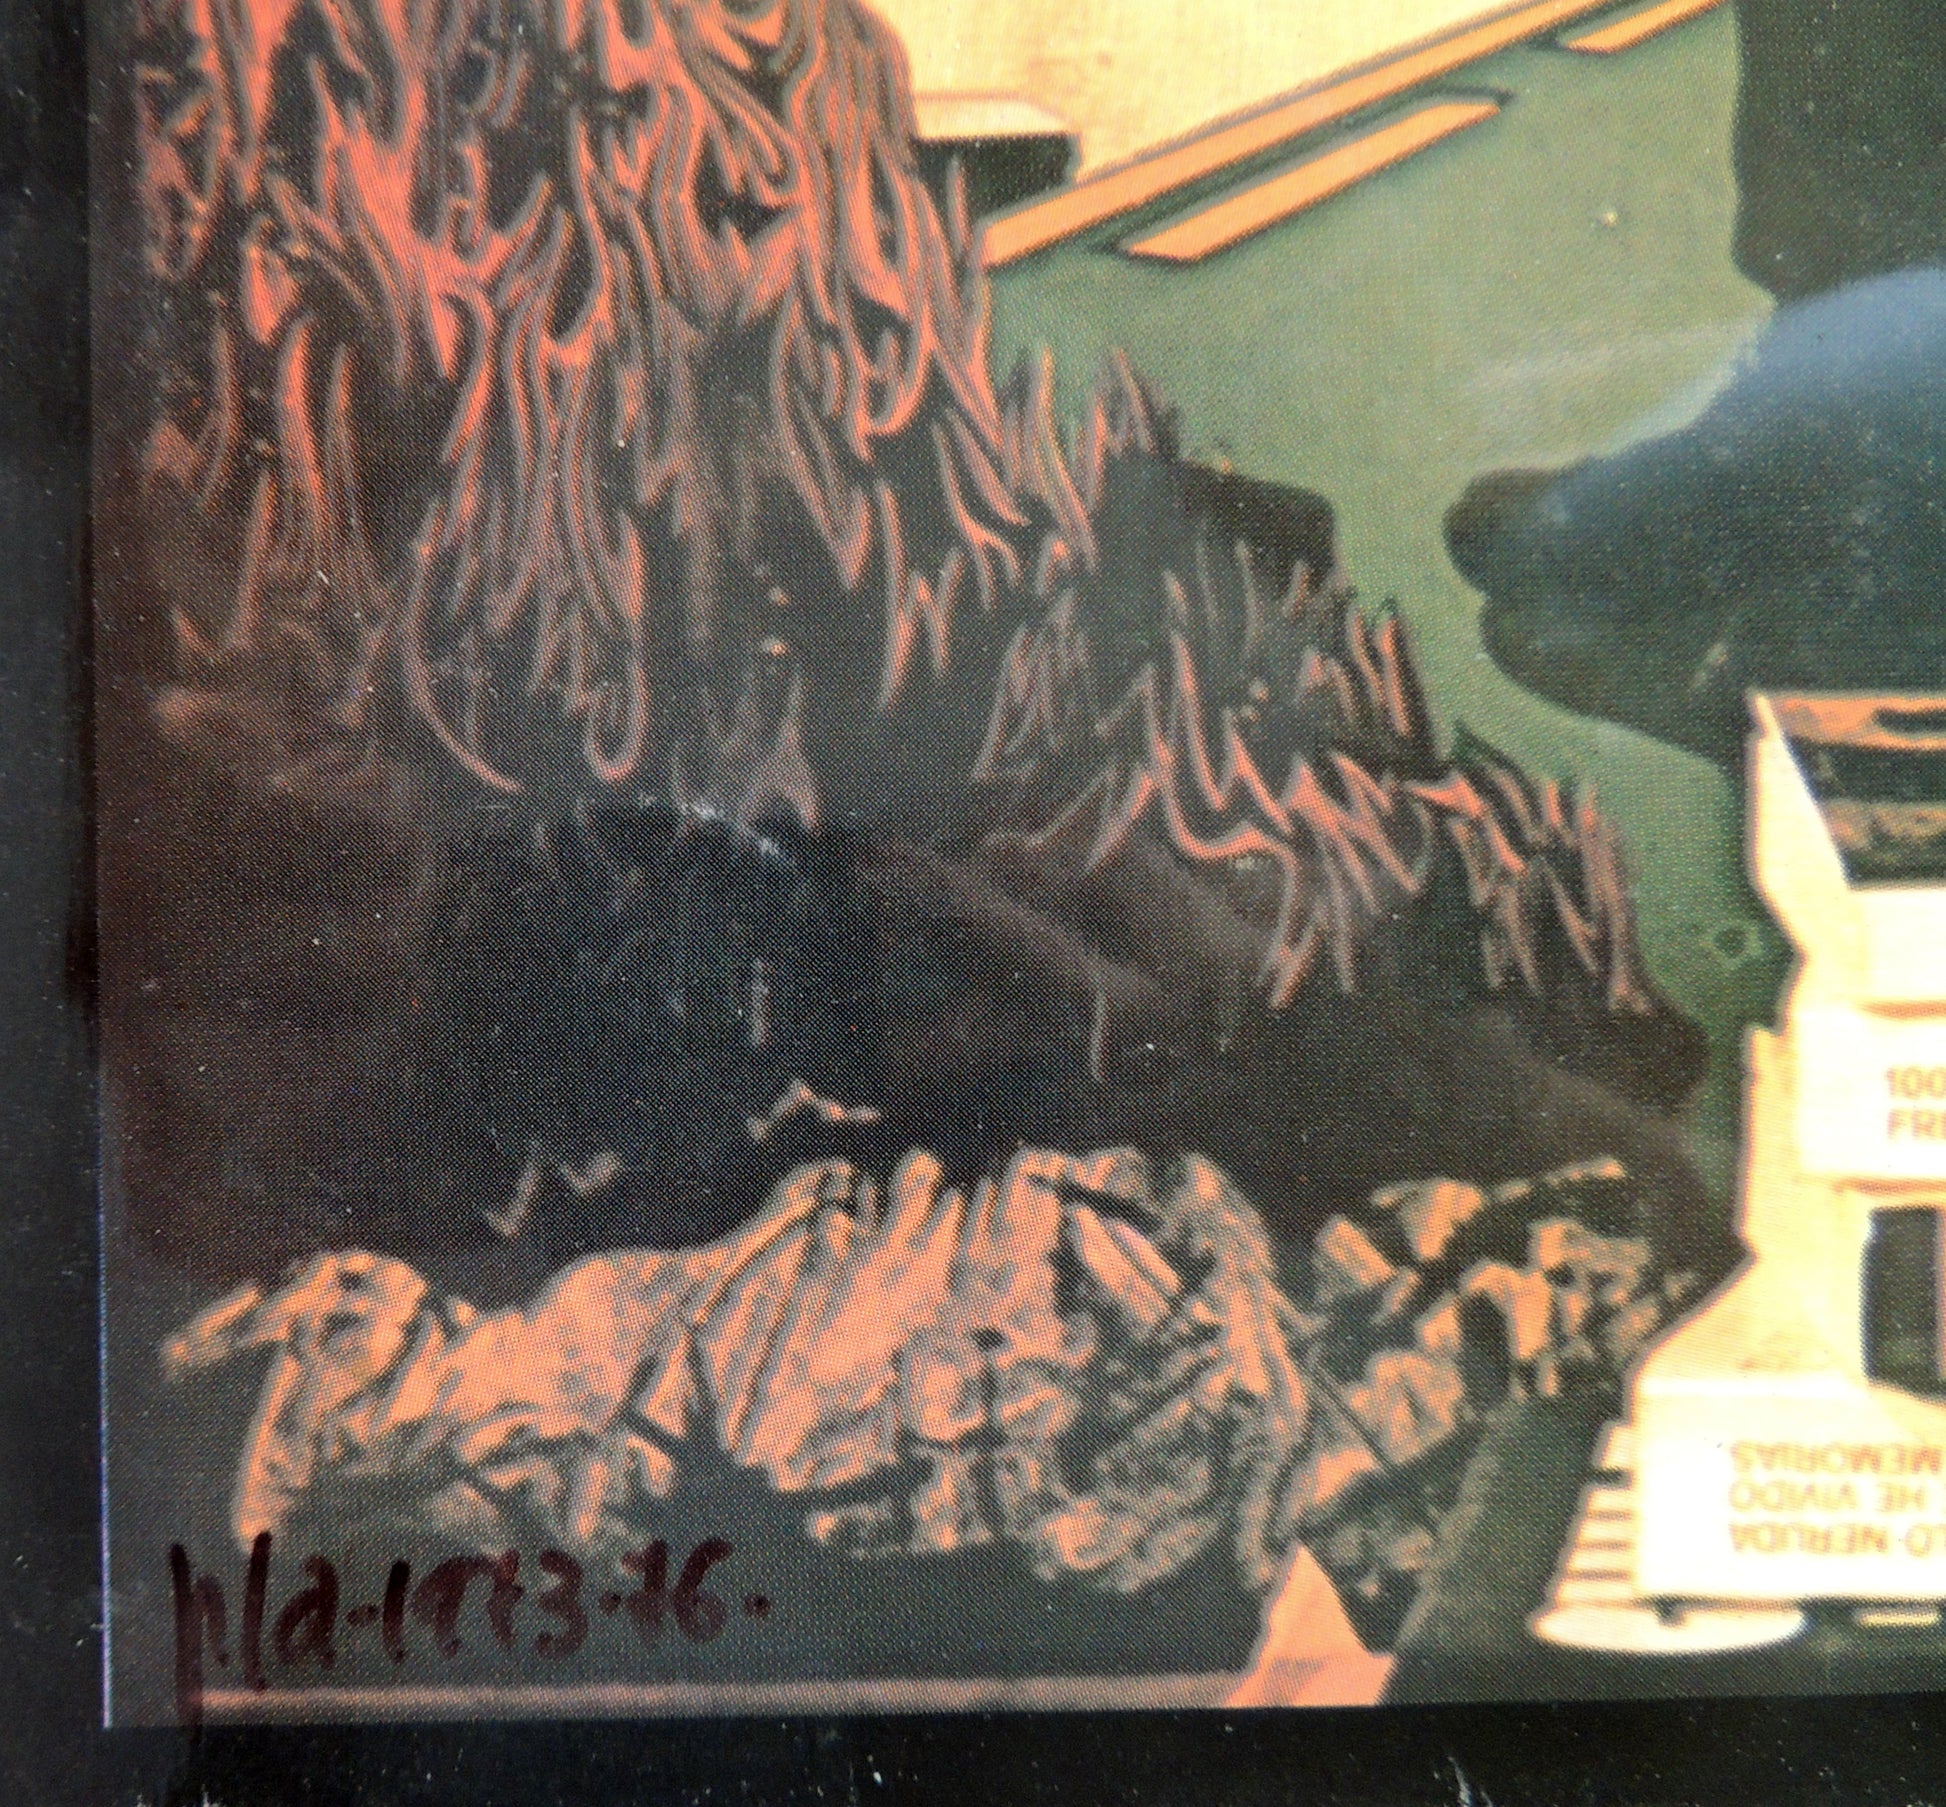 Impresión sobre plancha metálica edición limitada arte contemporáneo Antoni Miró Acta de fe detalle fecha Gaudifond